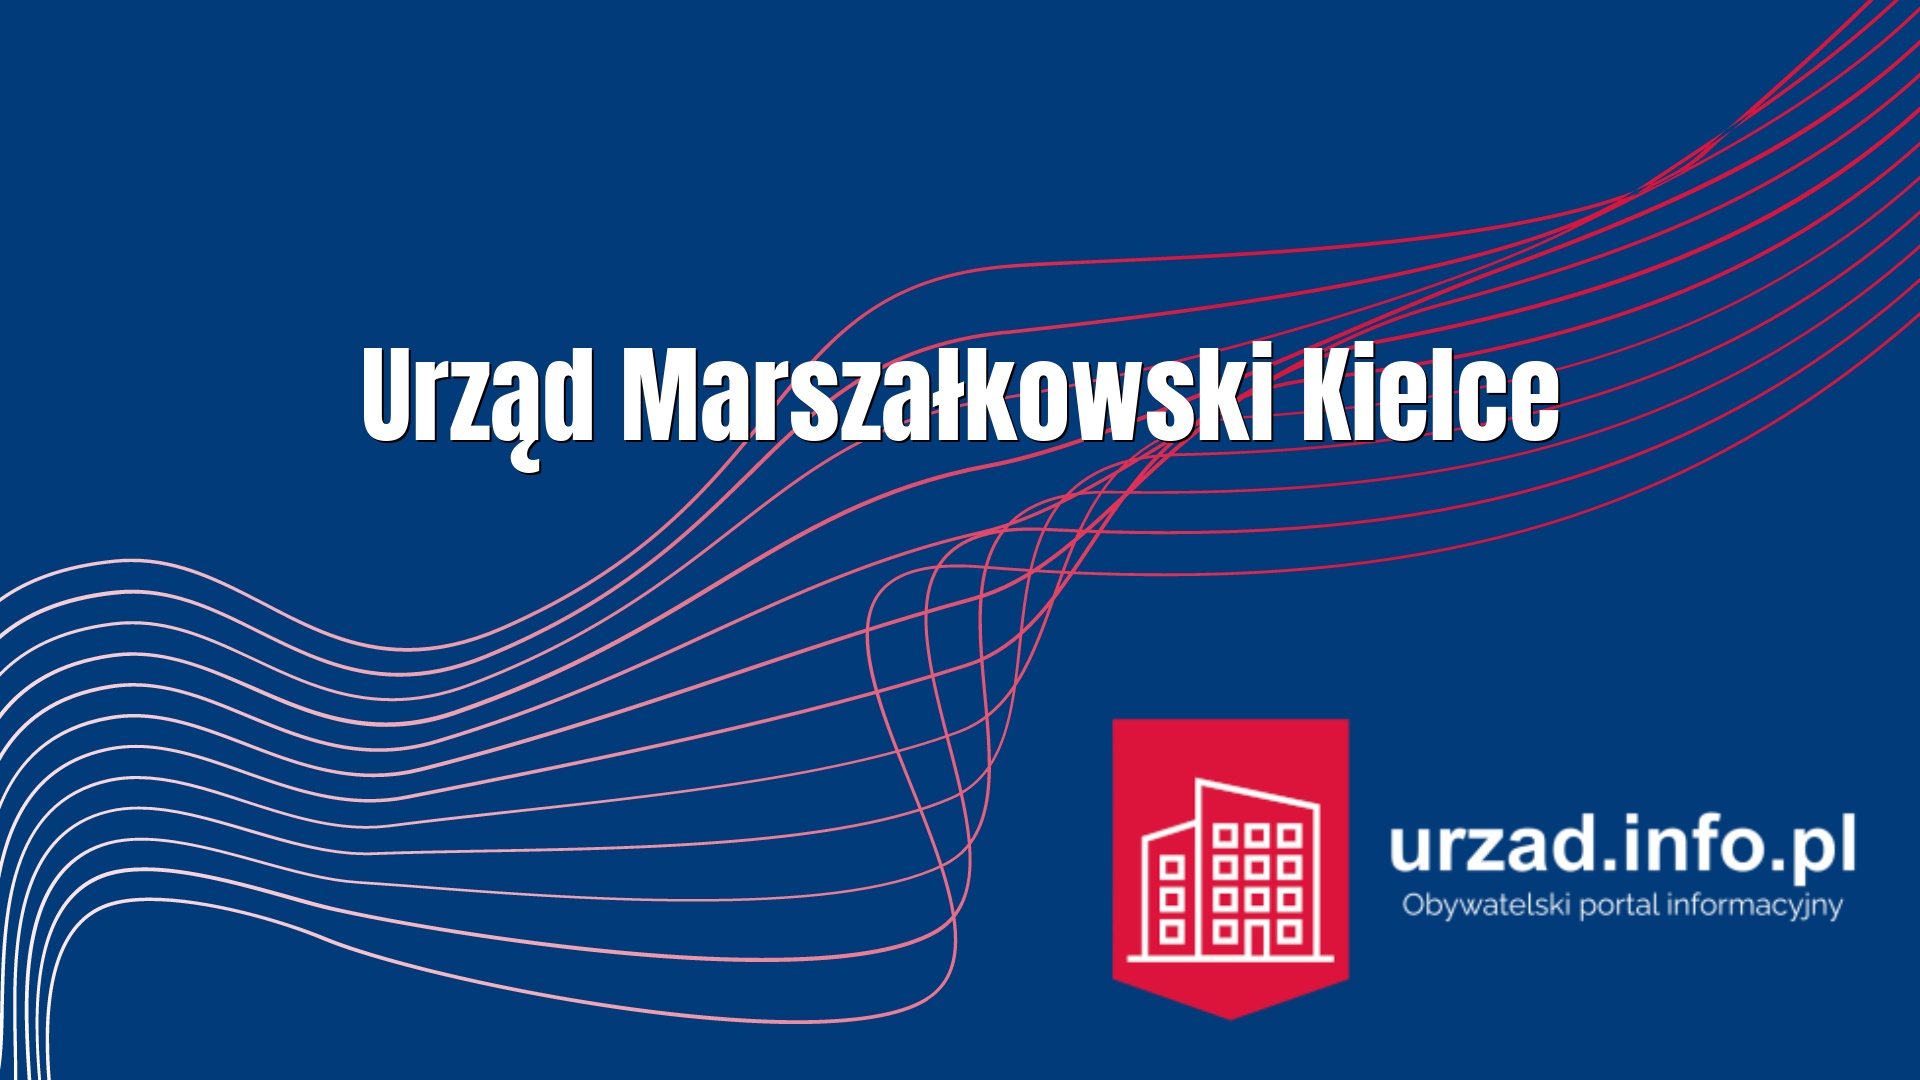 Urząd Marszałkowski Kielce